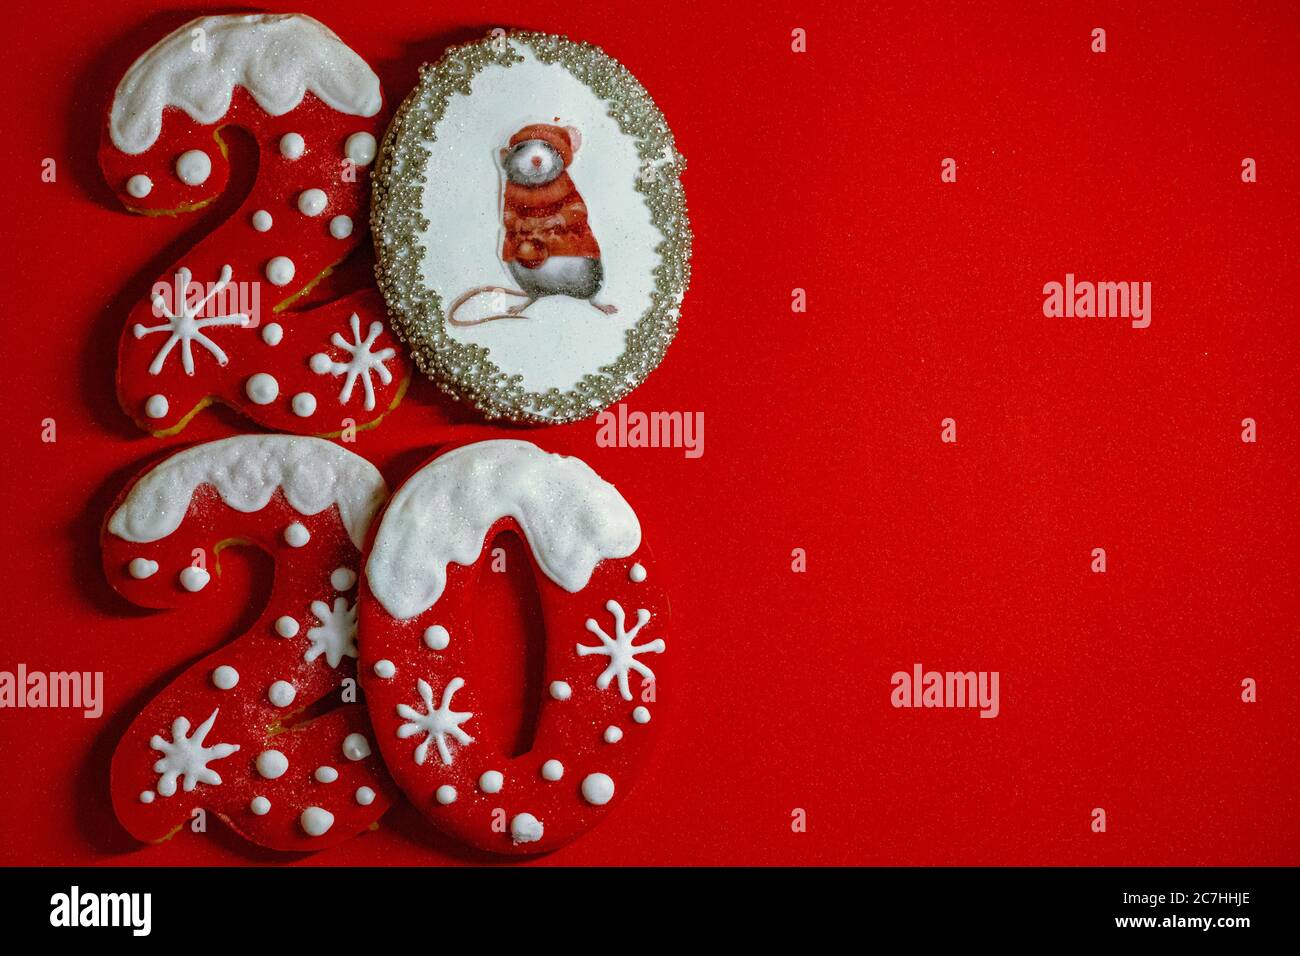 Joyeux Noël et joyeux nouvel an 2020, petits gâteaux de pain d'épice de Noël sur fond rouge Banque D'Images